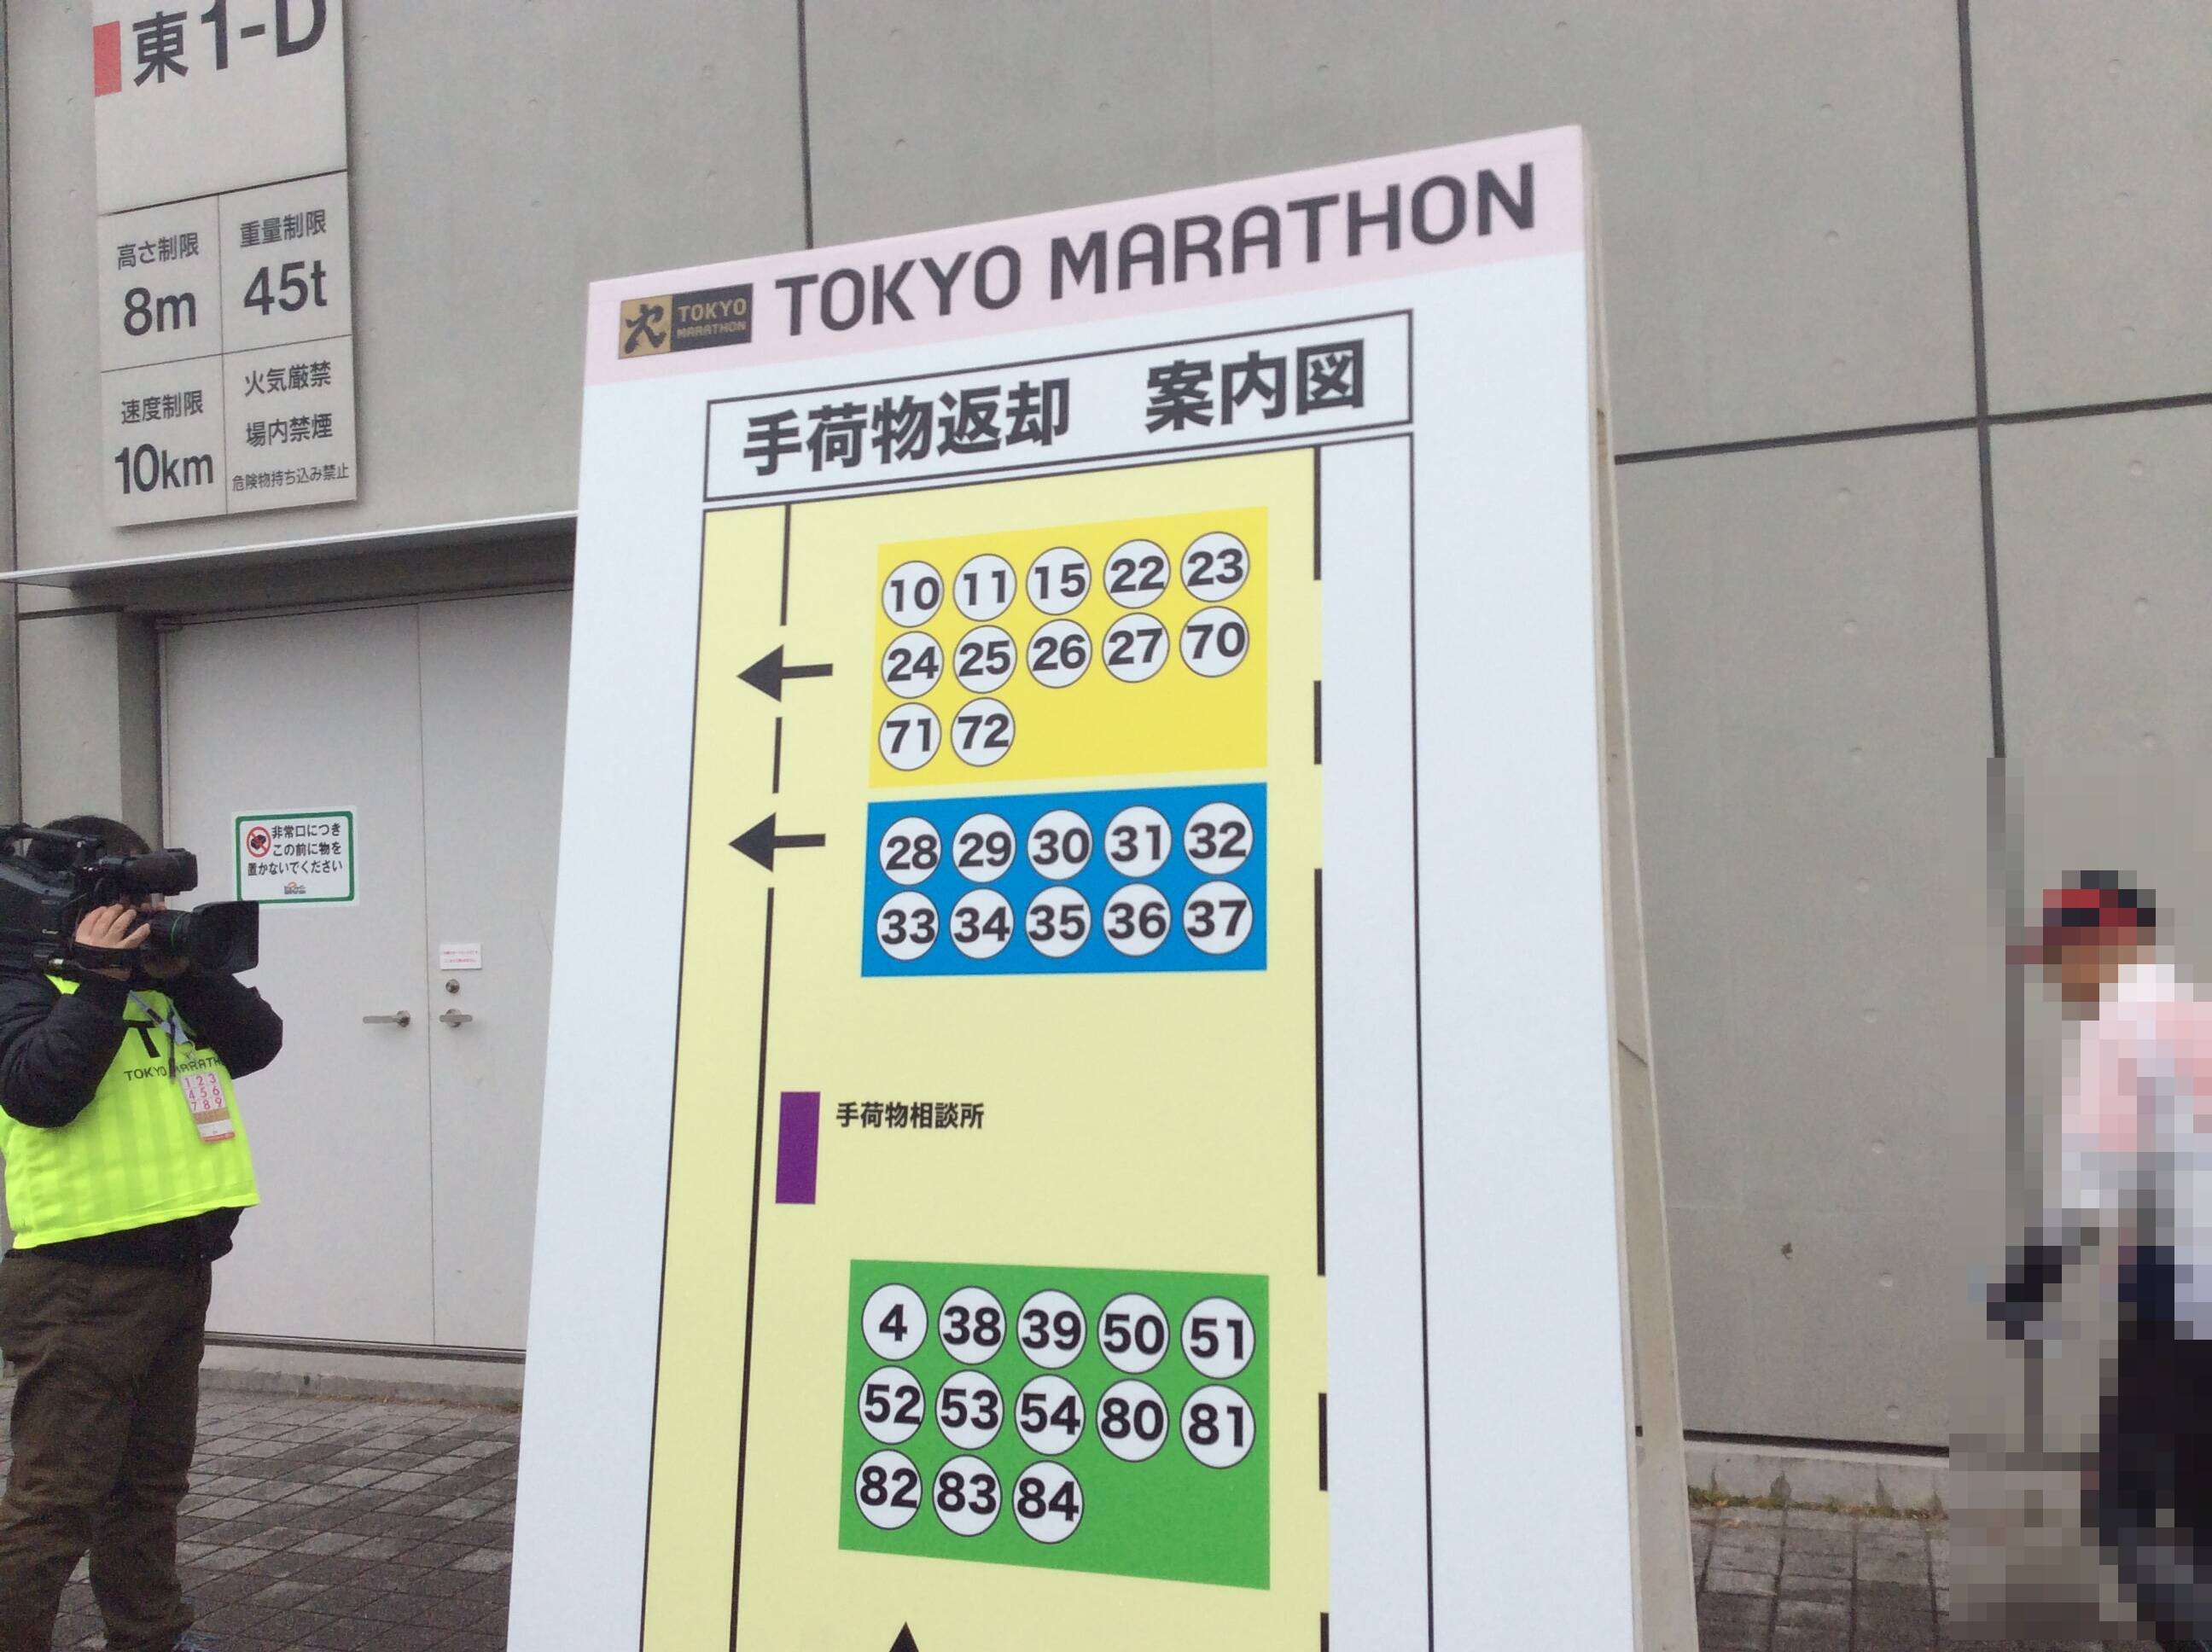 東京マラソンをリタイアしたランナーは、どのような扱いを受けるのか